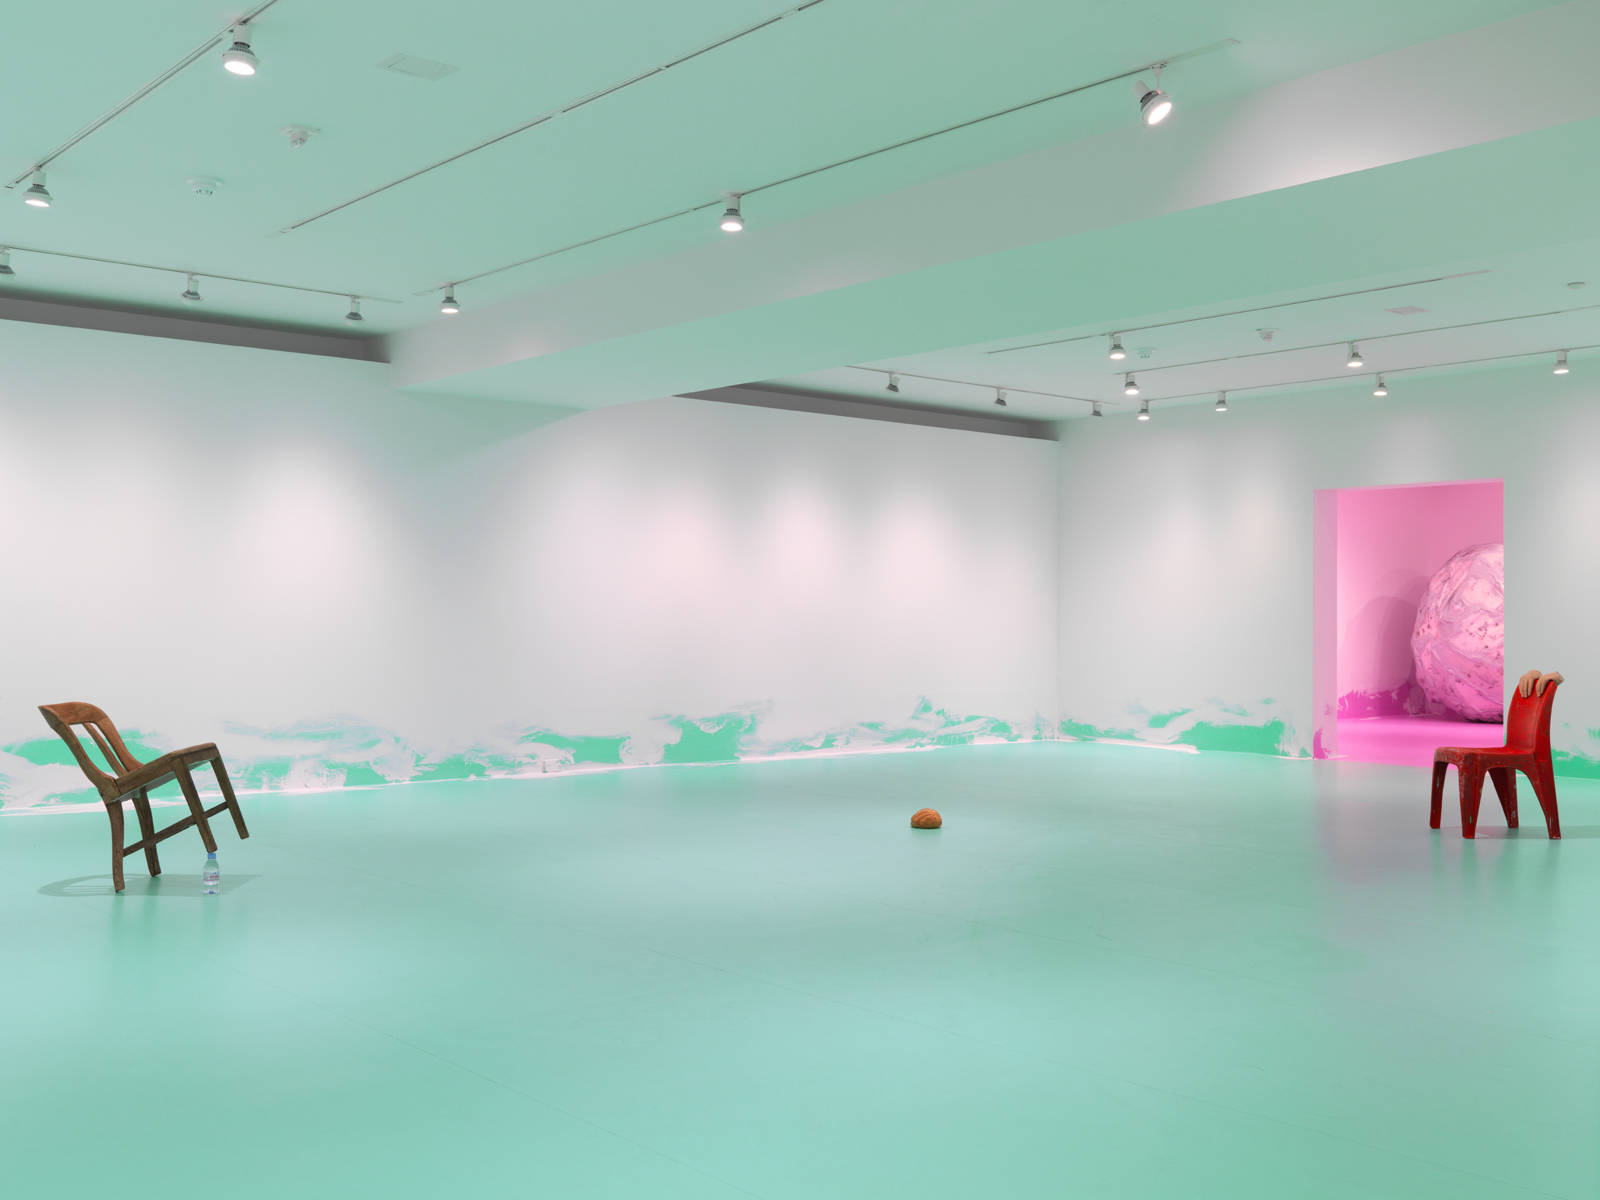 Urs Fischer / Exhibition view, Gagosian Gallery NYC / 2014